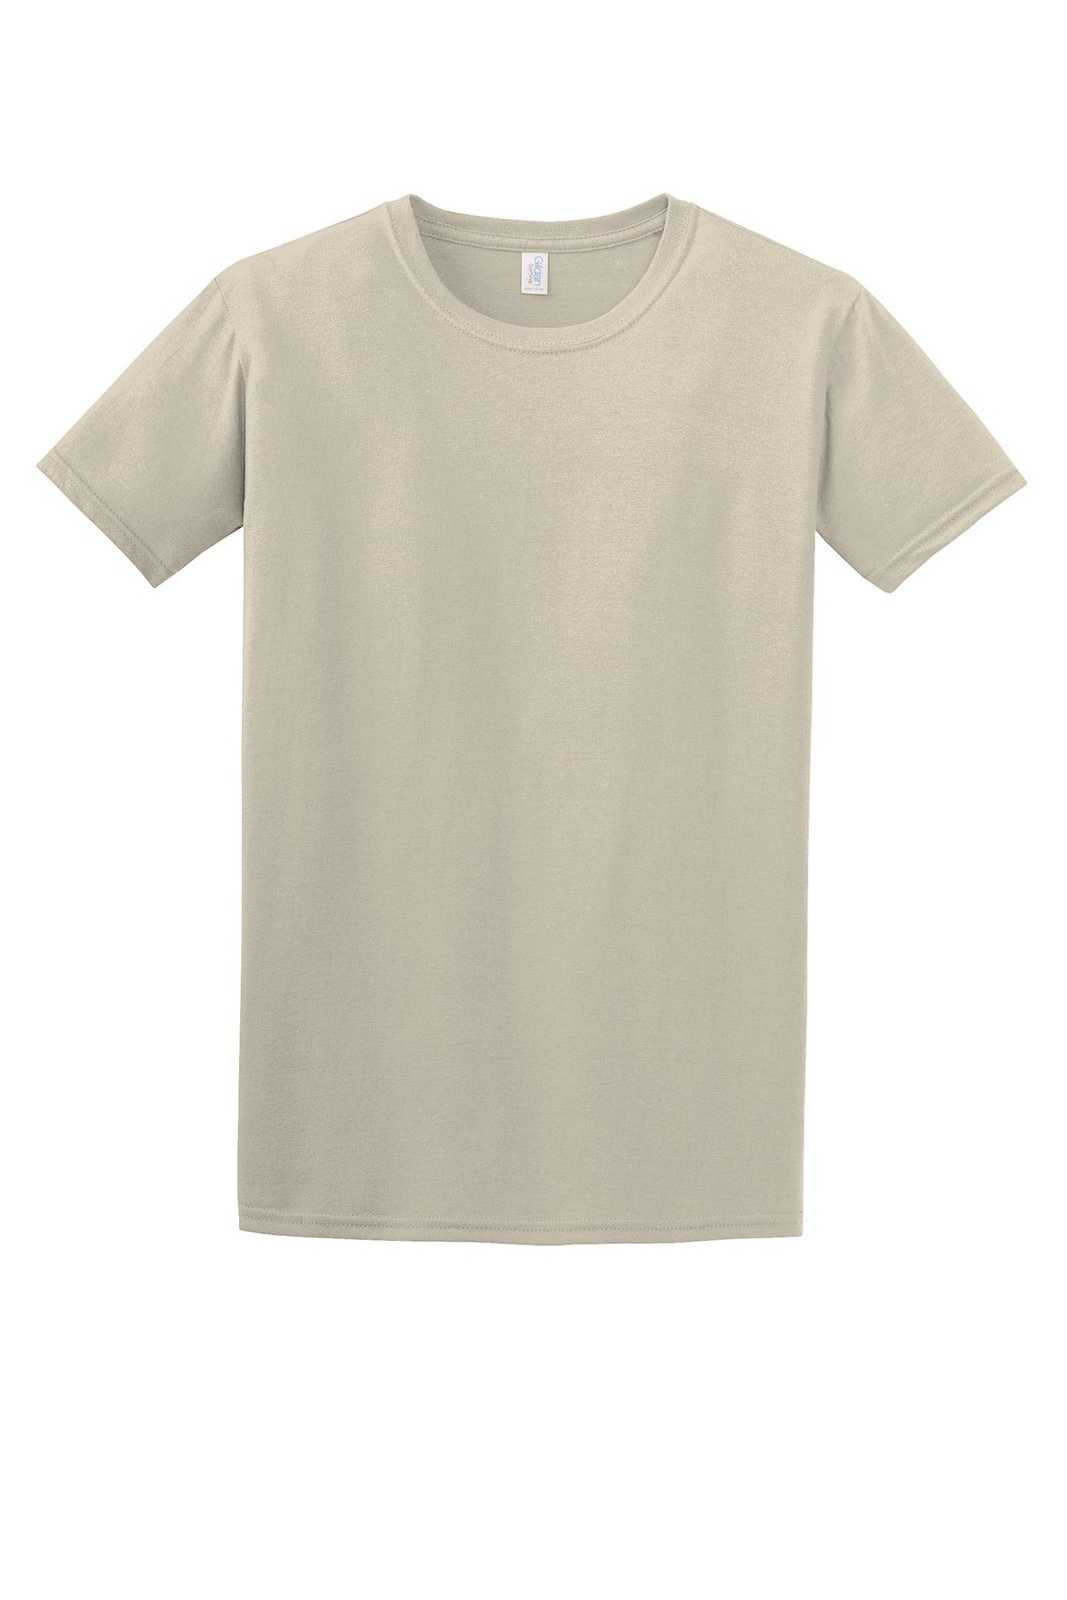 Gildan 64000 Softstyle T-Shirt - Sand - HIT a Double